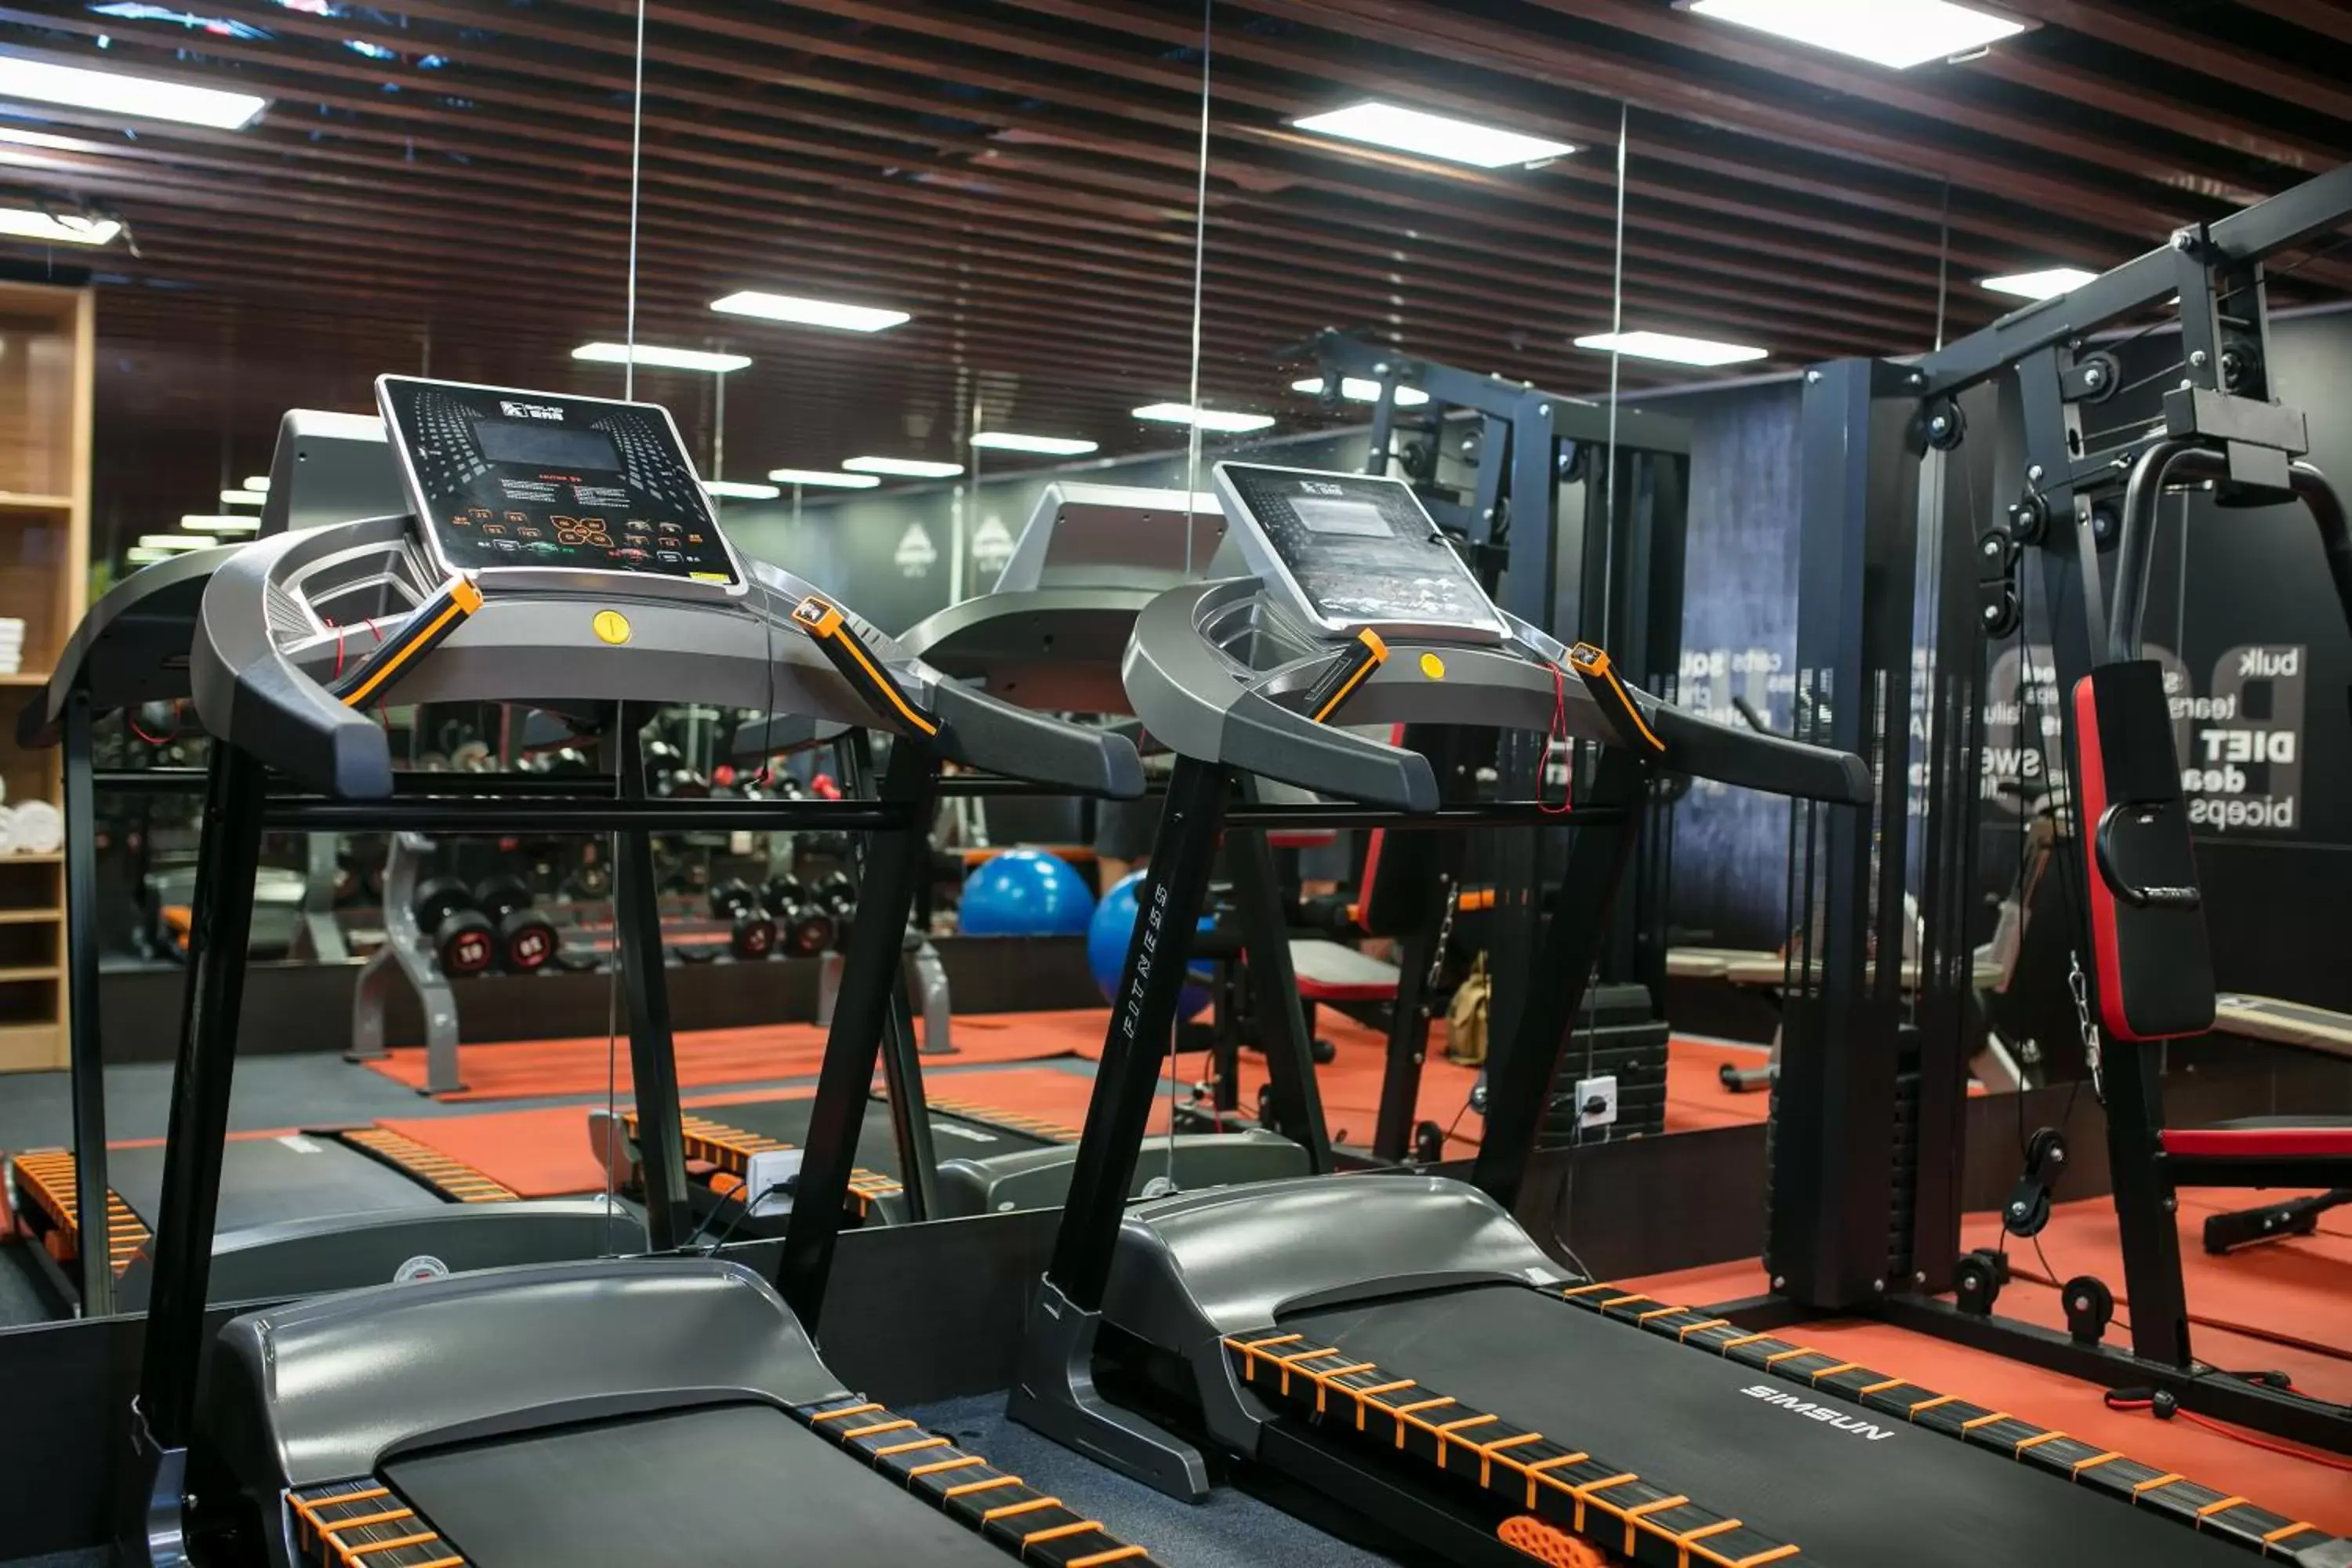 Fitness centre/facilities, Fitness Center/Facilities in Grandiose Hotel & Spa